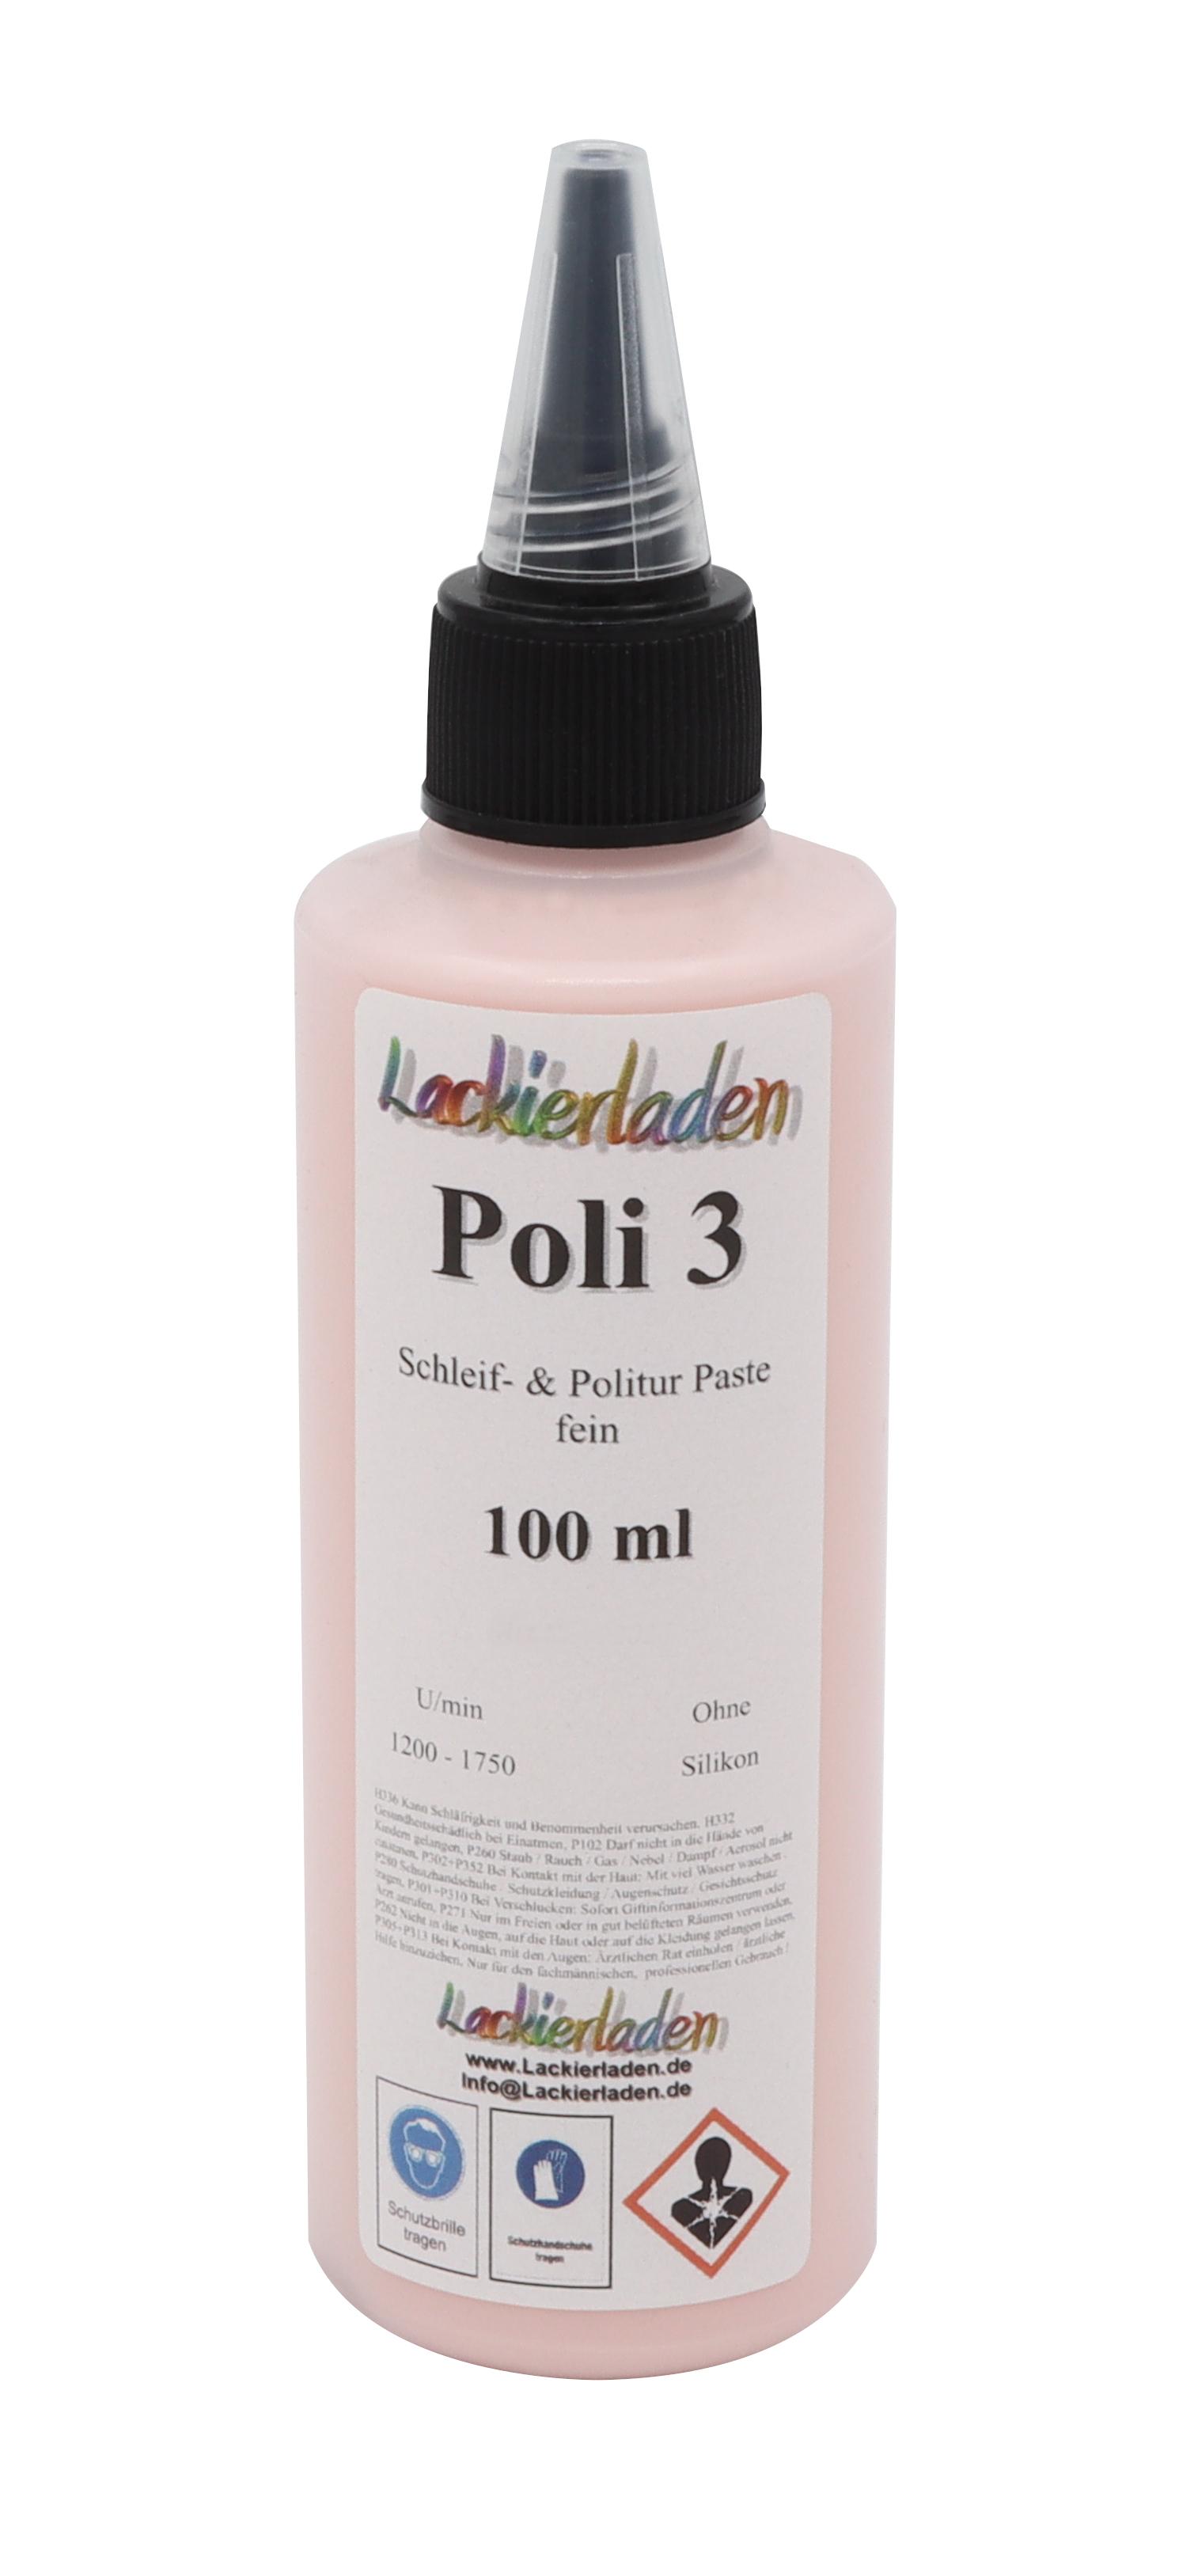 Poli 3 Schleif- & Politur Paste medium 100 ml | Polierpaste Schleifpaste polieren